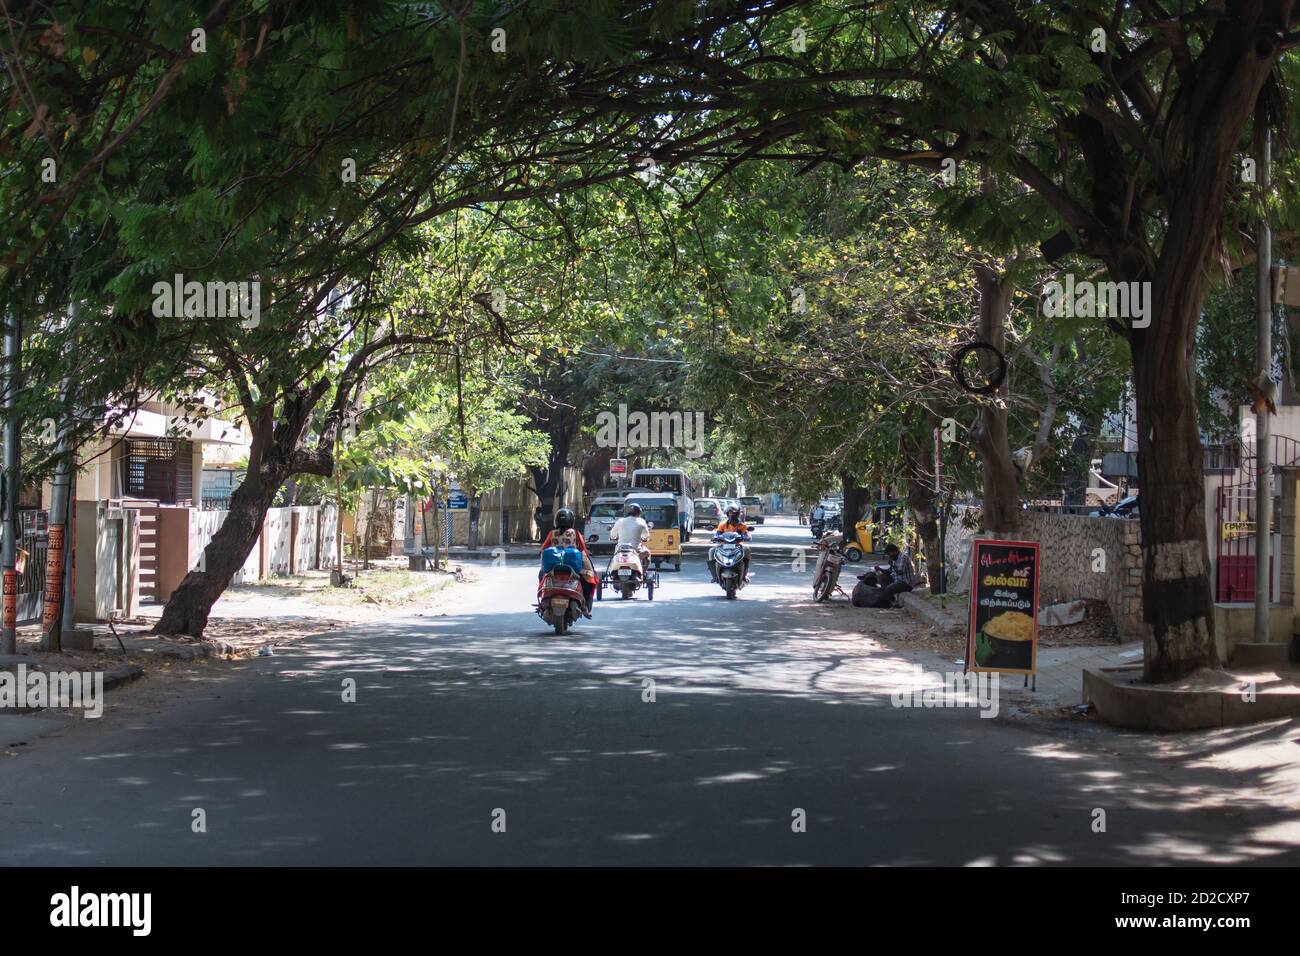 Chennai, Indien - 8. Februar 2020: Täglicher Verkehr auf einer asphaltierten Straße unter überhängenden Bäumen am 8. Februar 2020 in Chennai, Indien Stockfoto